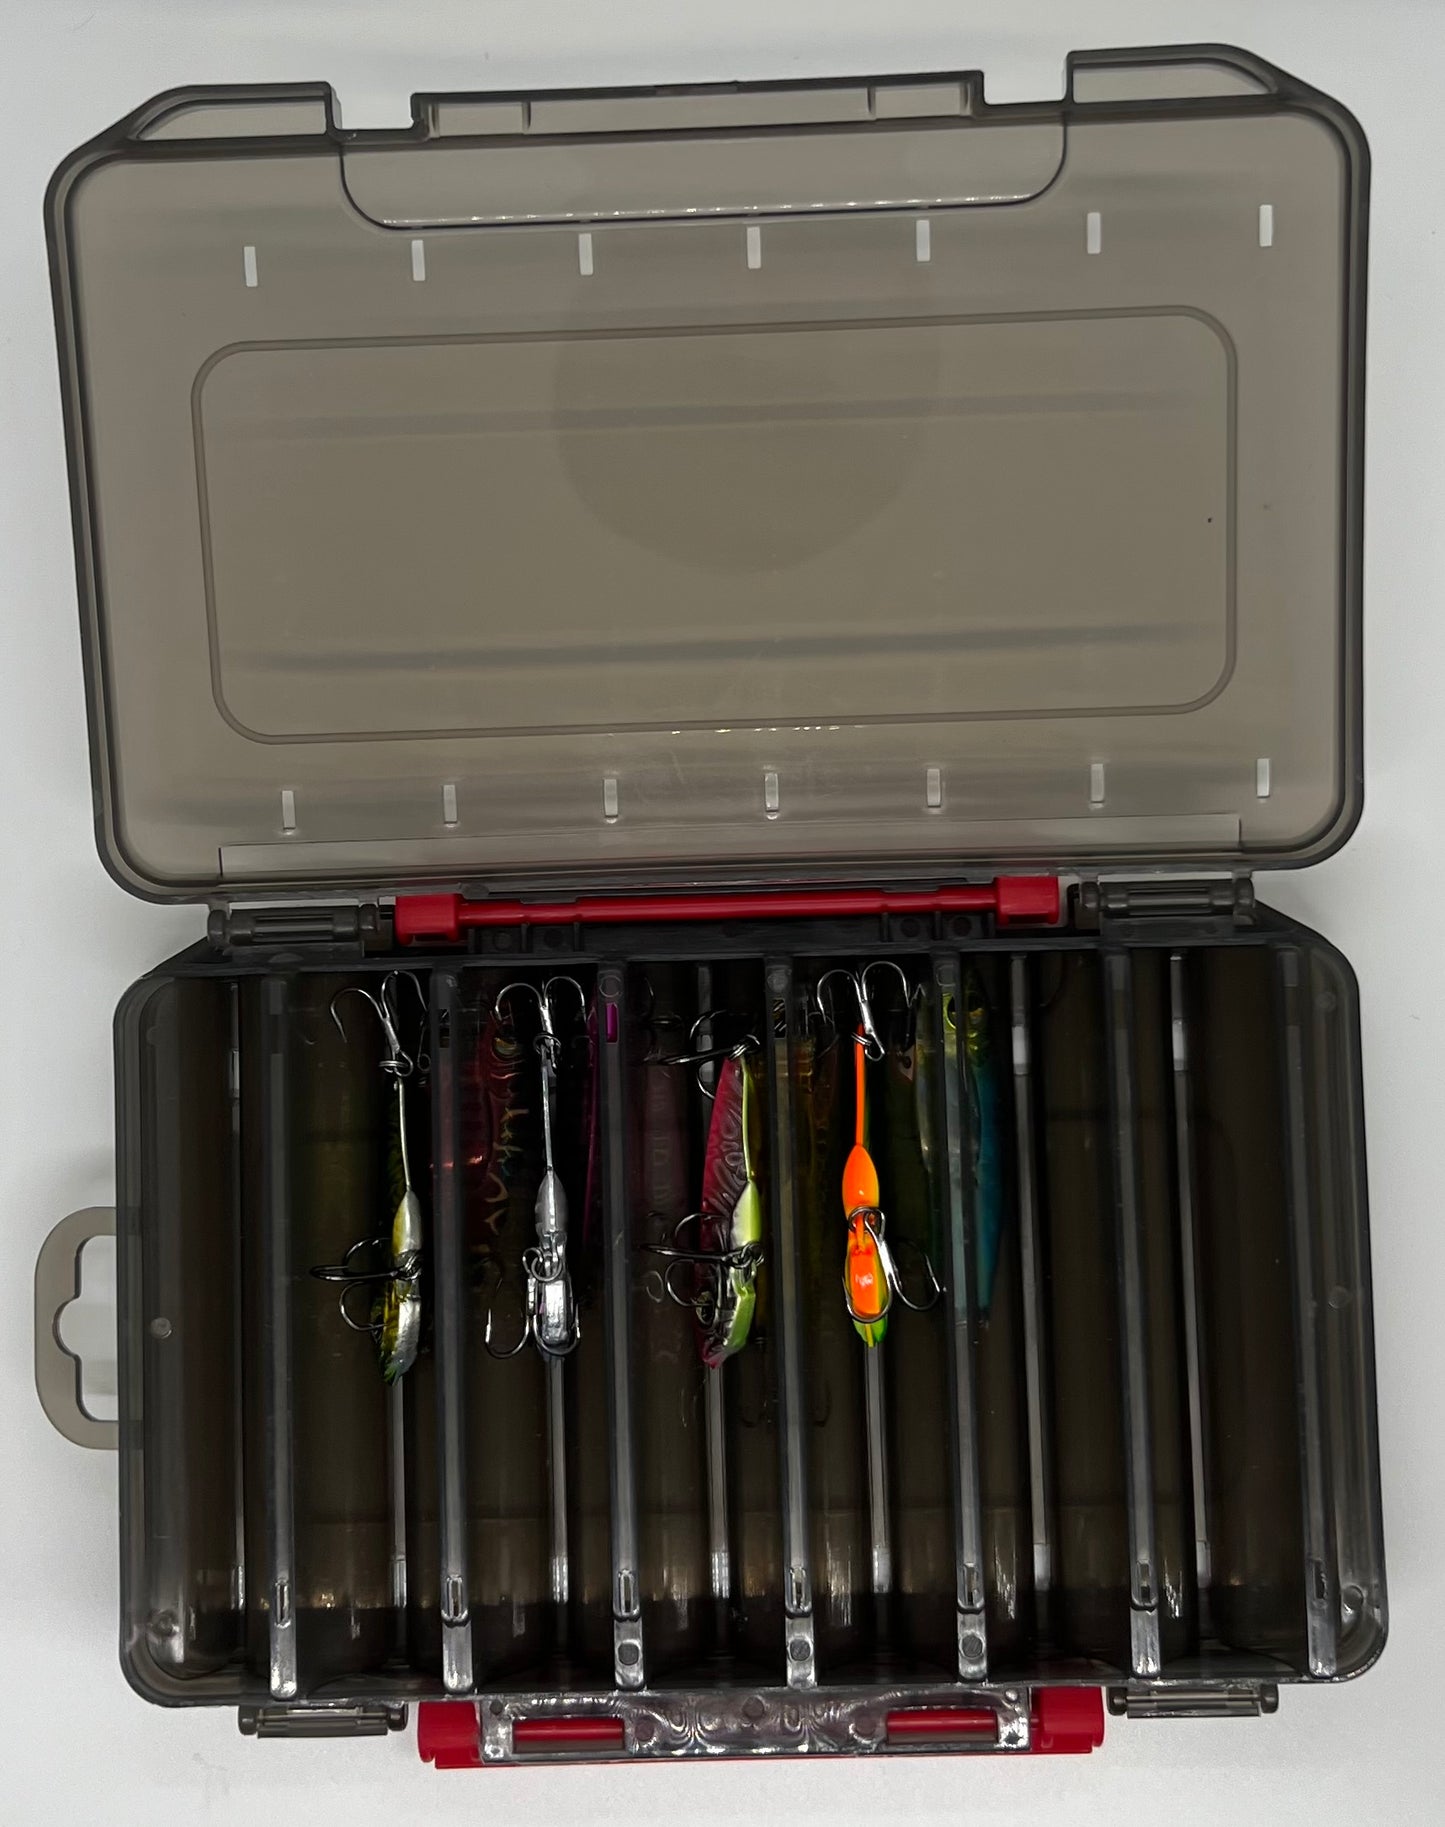 RTF Raider Blade Bait 1/2oz Kit (8ct Blade Baits + Tackle Box)